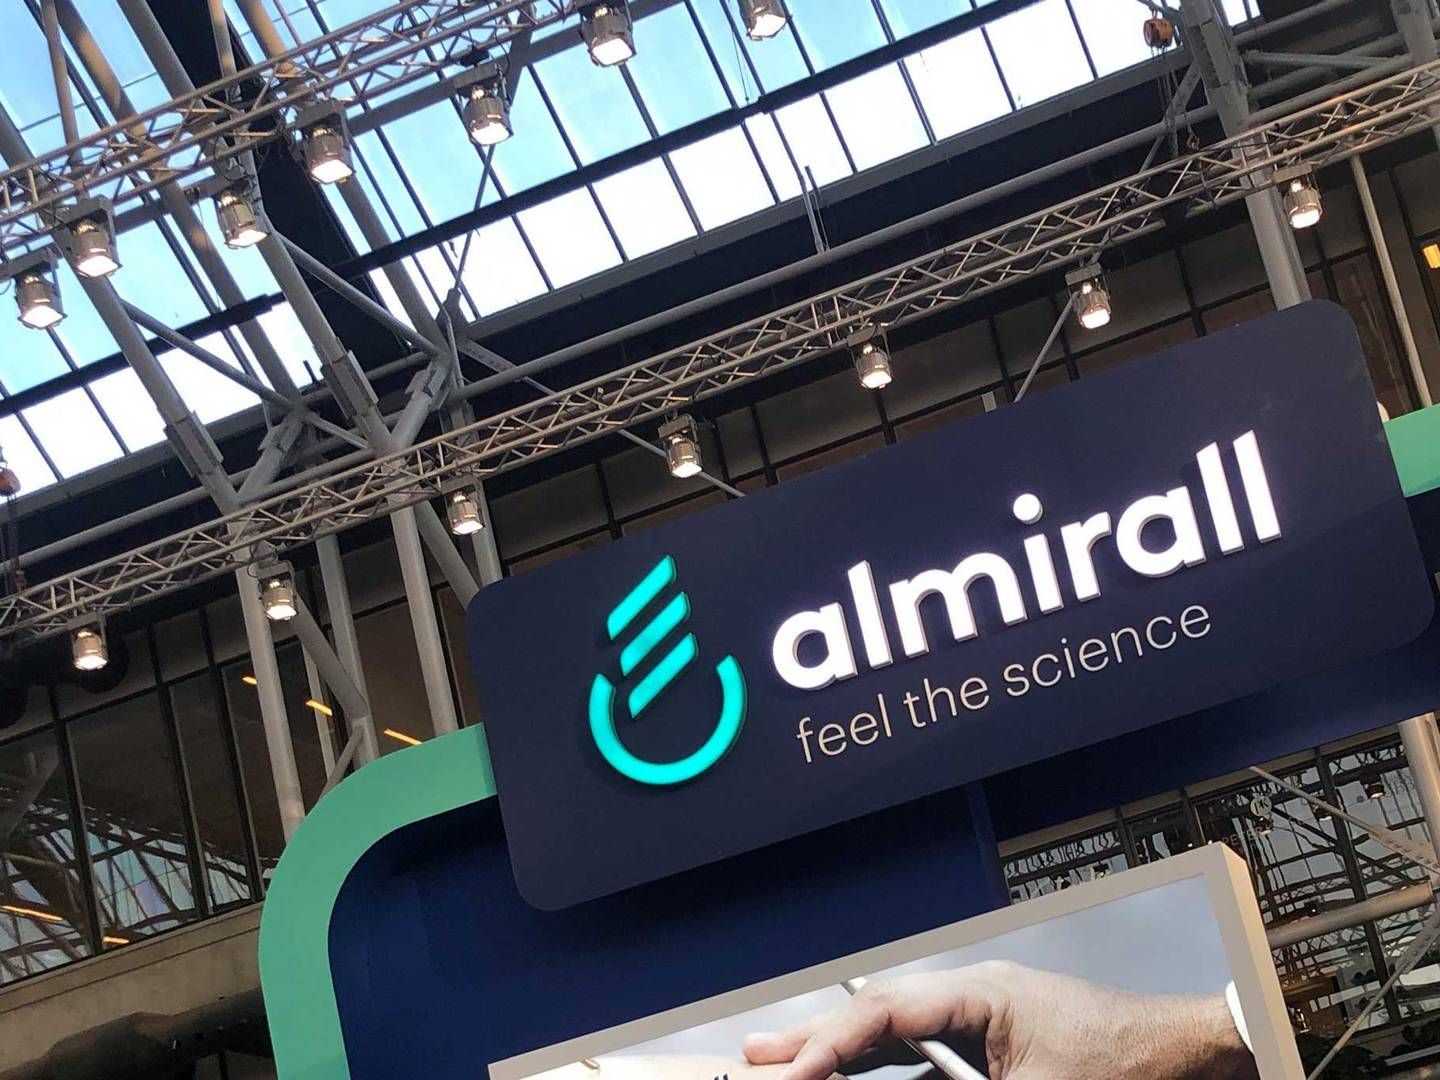 I jagten på nye behandlinger mod hudsygdomme har det spanske dermatologiselskab Almirall nu indgået endnu et AI-partnerskab. | Foto: Mikkel Aabenhus Hemmingsen / Medwatch